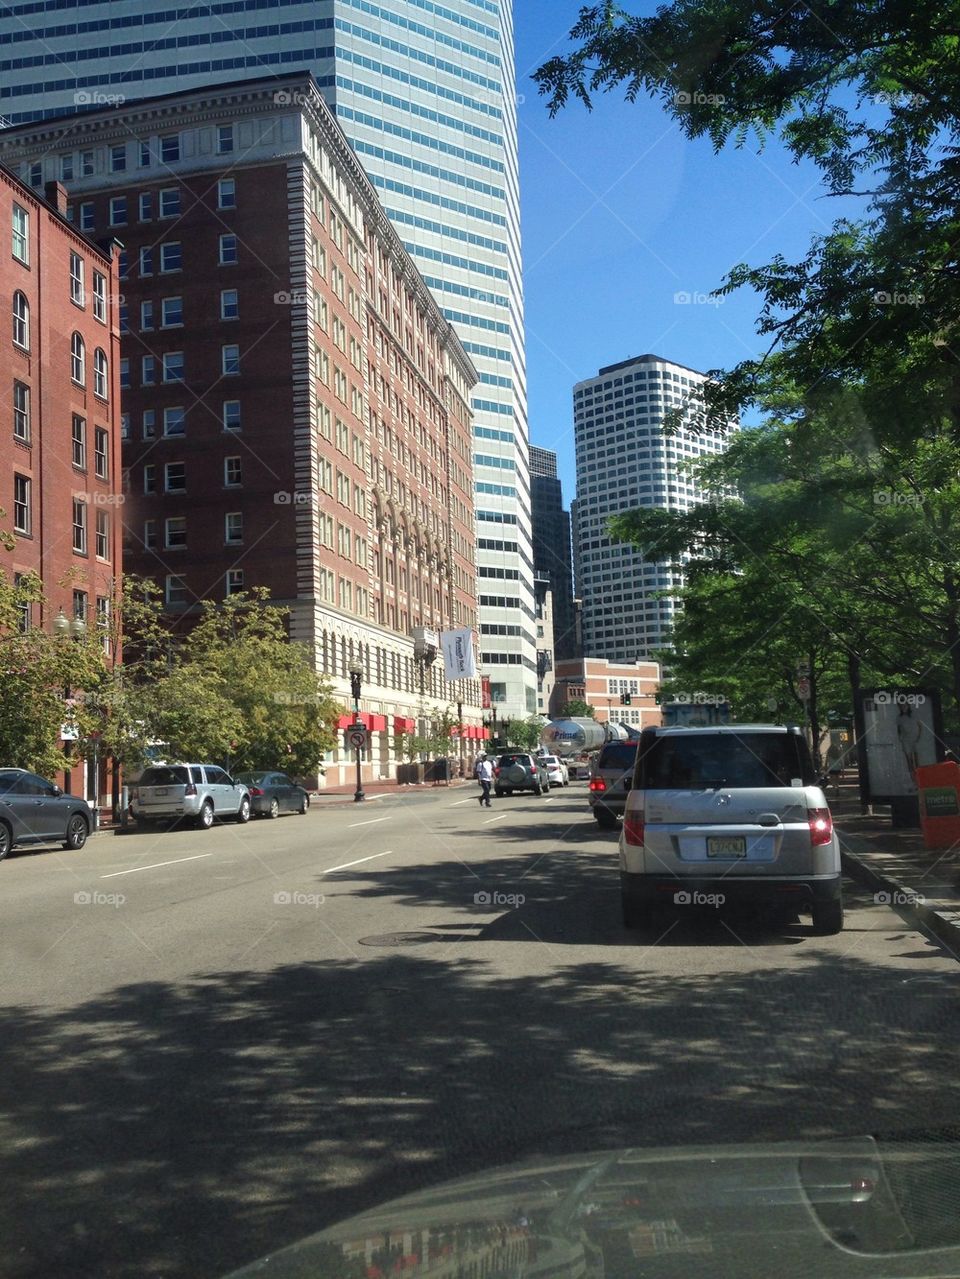 Boston Financial District 